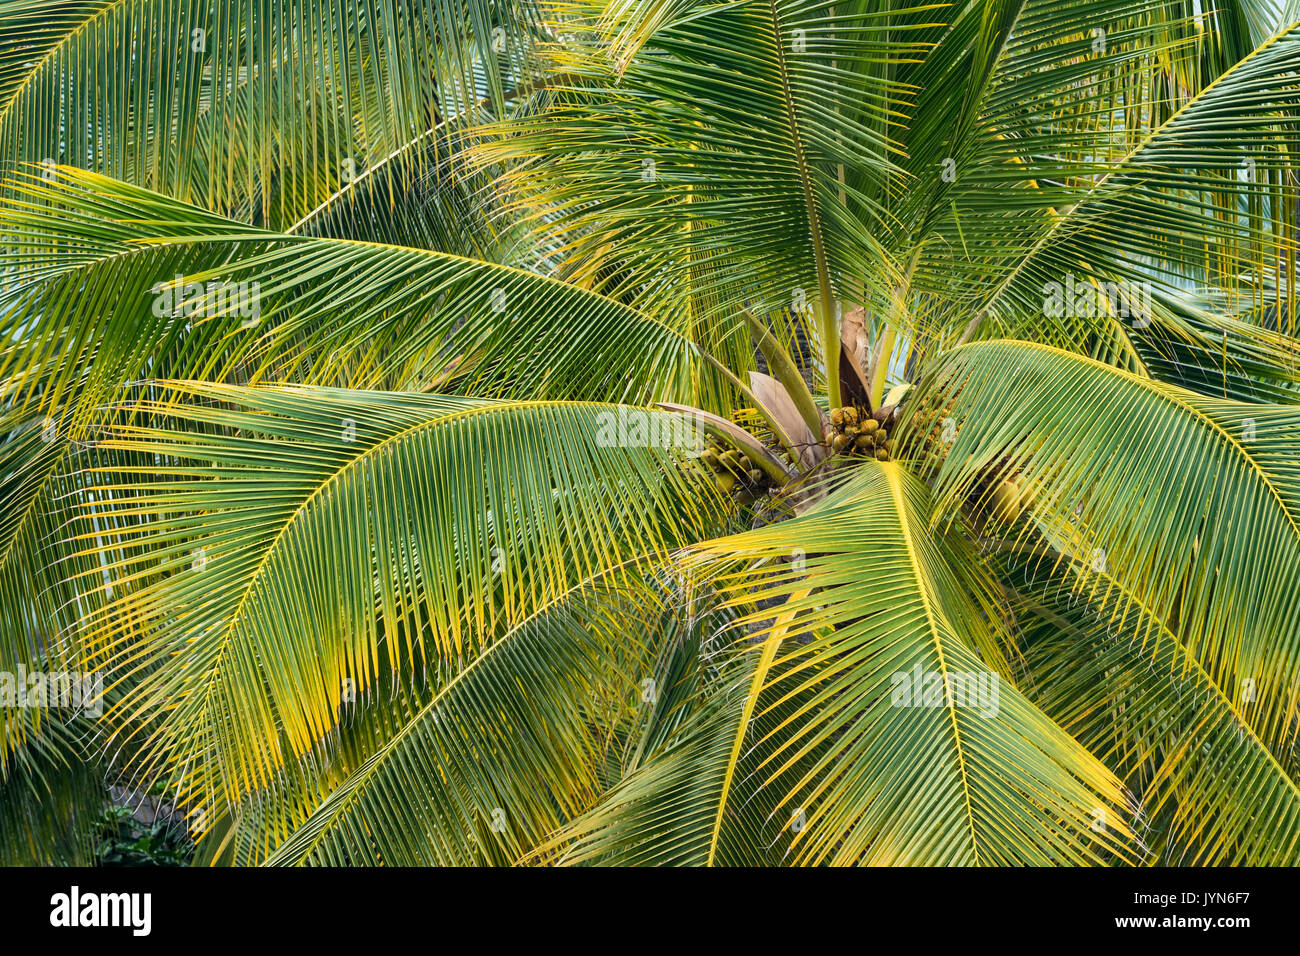 Coconut palm trees at Pu'uhonua O Honaunau National Historical Park, South Kona, Hawaii. Stock Photo